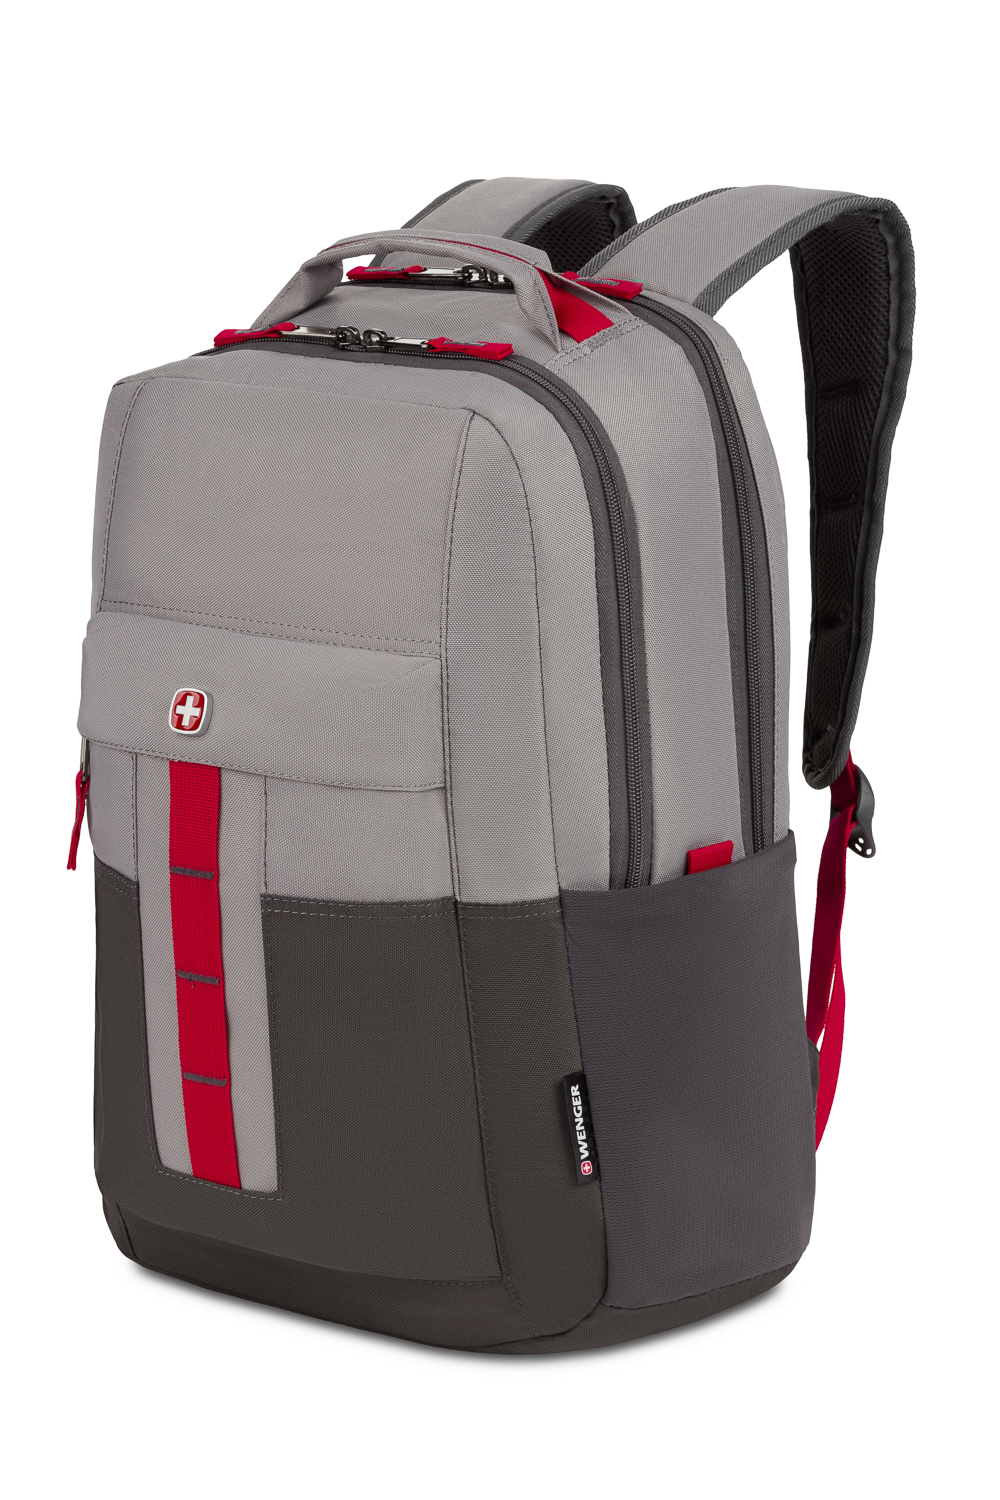 WENGER Ero Pro 16 inch Laptop Backpack - Light Gray / Gray